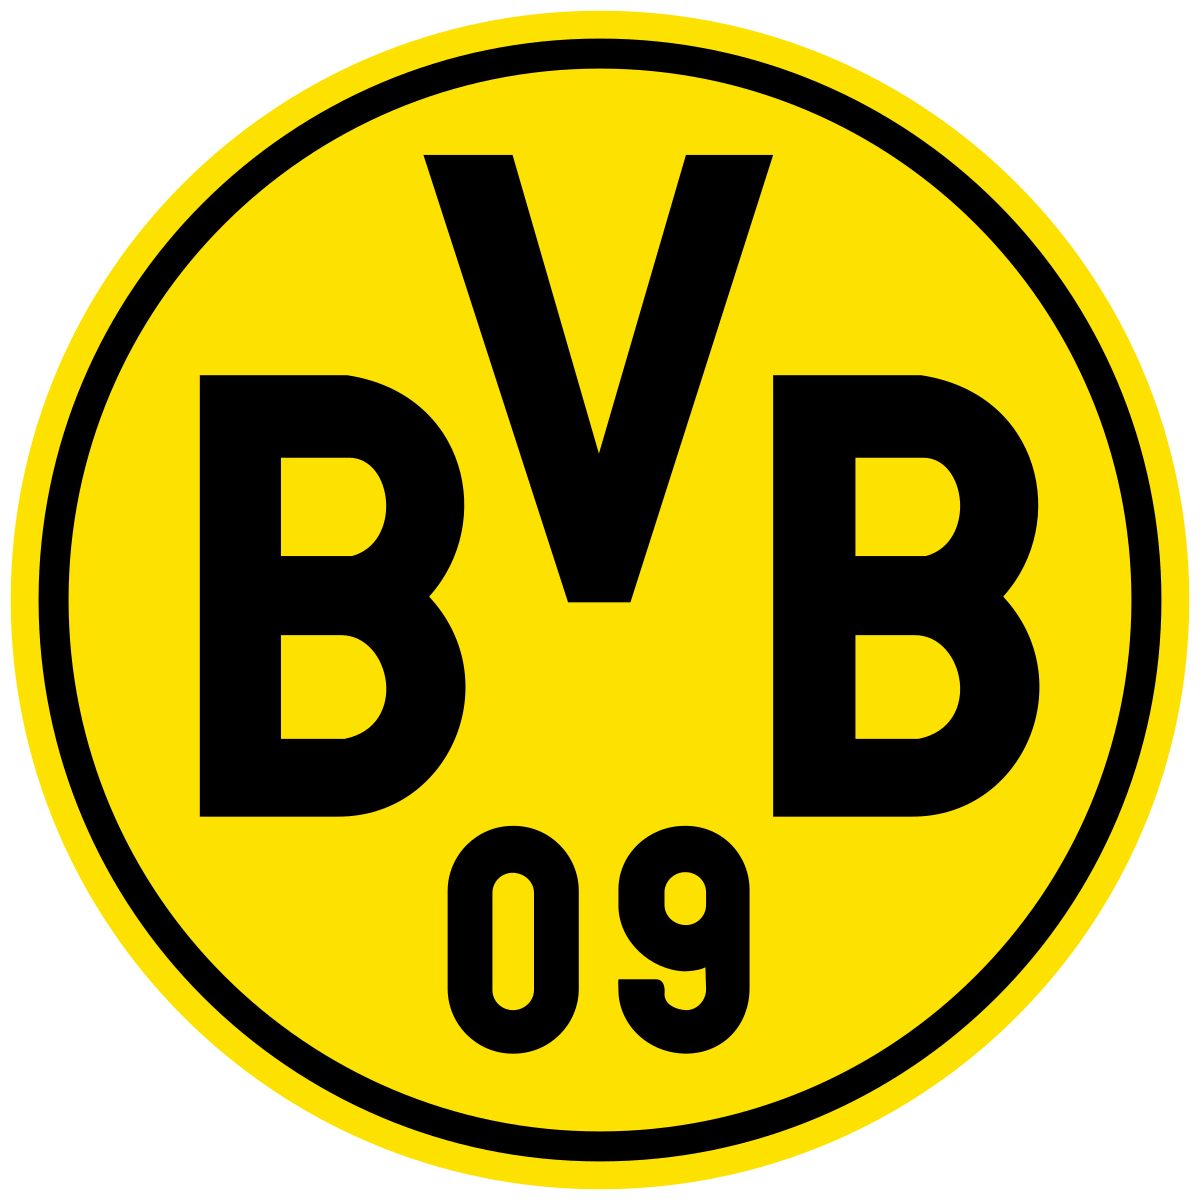 Biglietti Borussia Dortmund